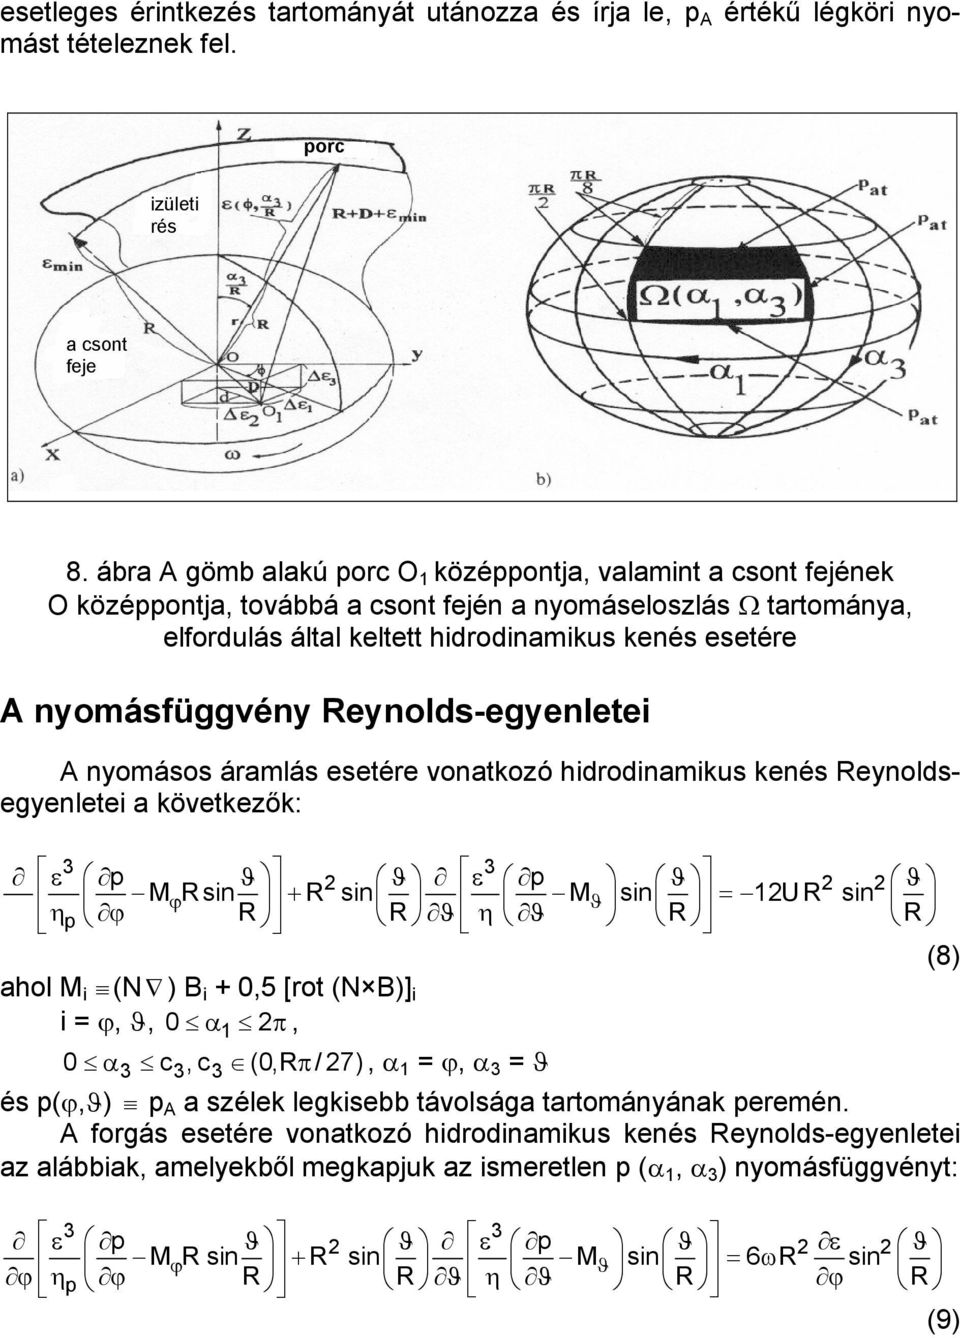 nyomásfüggvény Reynolds-egyenletei A nyomásos áramlás esetére vonatkozó hidrodinamikus kenés Reynoldsegyenletei a következők: 3 3 ε p ϑ 2 ϑ ε p ϑ 2 2 ϑ MϕR sin + R sin Mϑ sin = 12U R sin ηp ϕ R R ϑ η